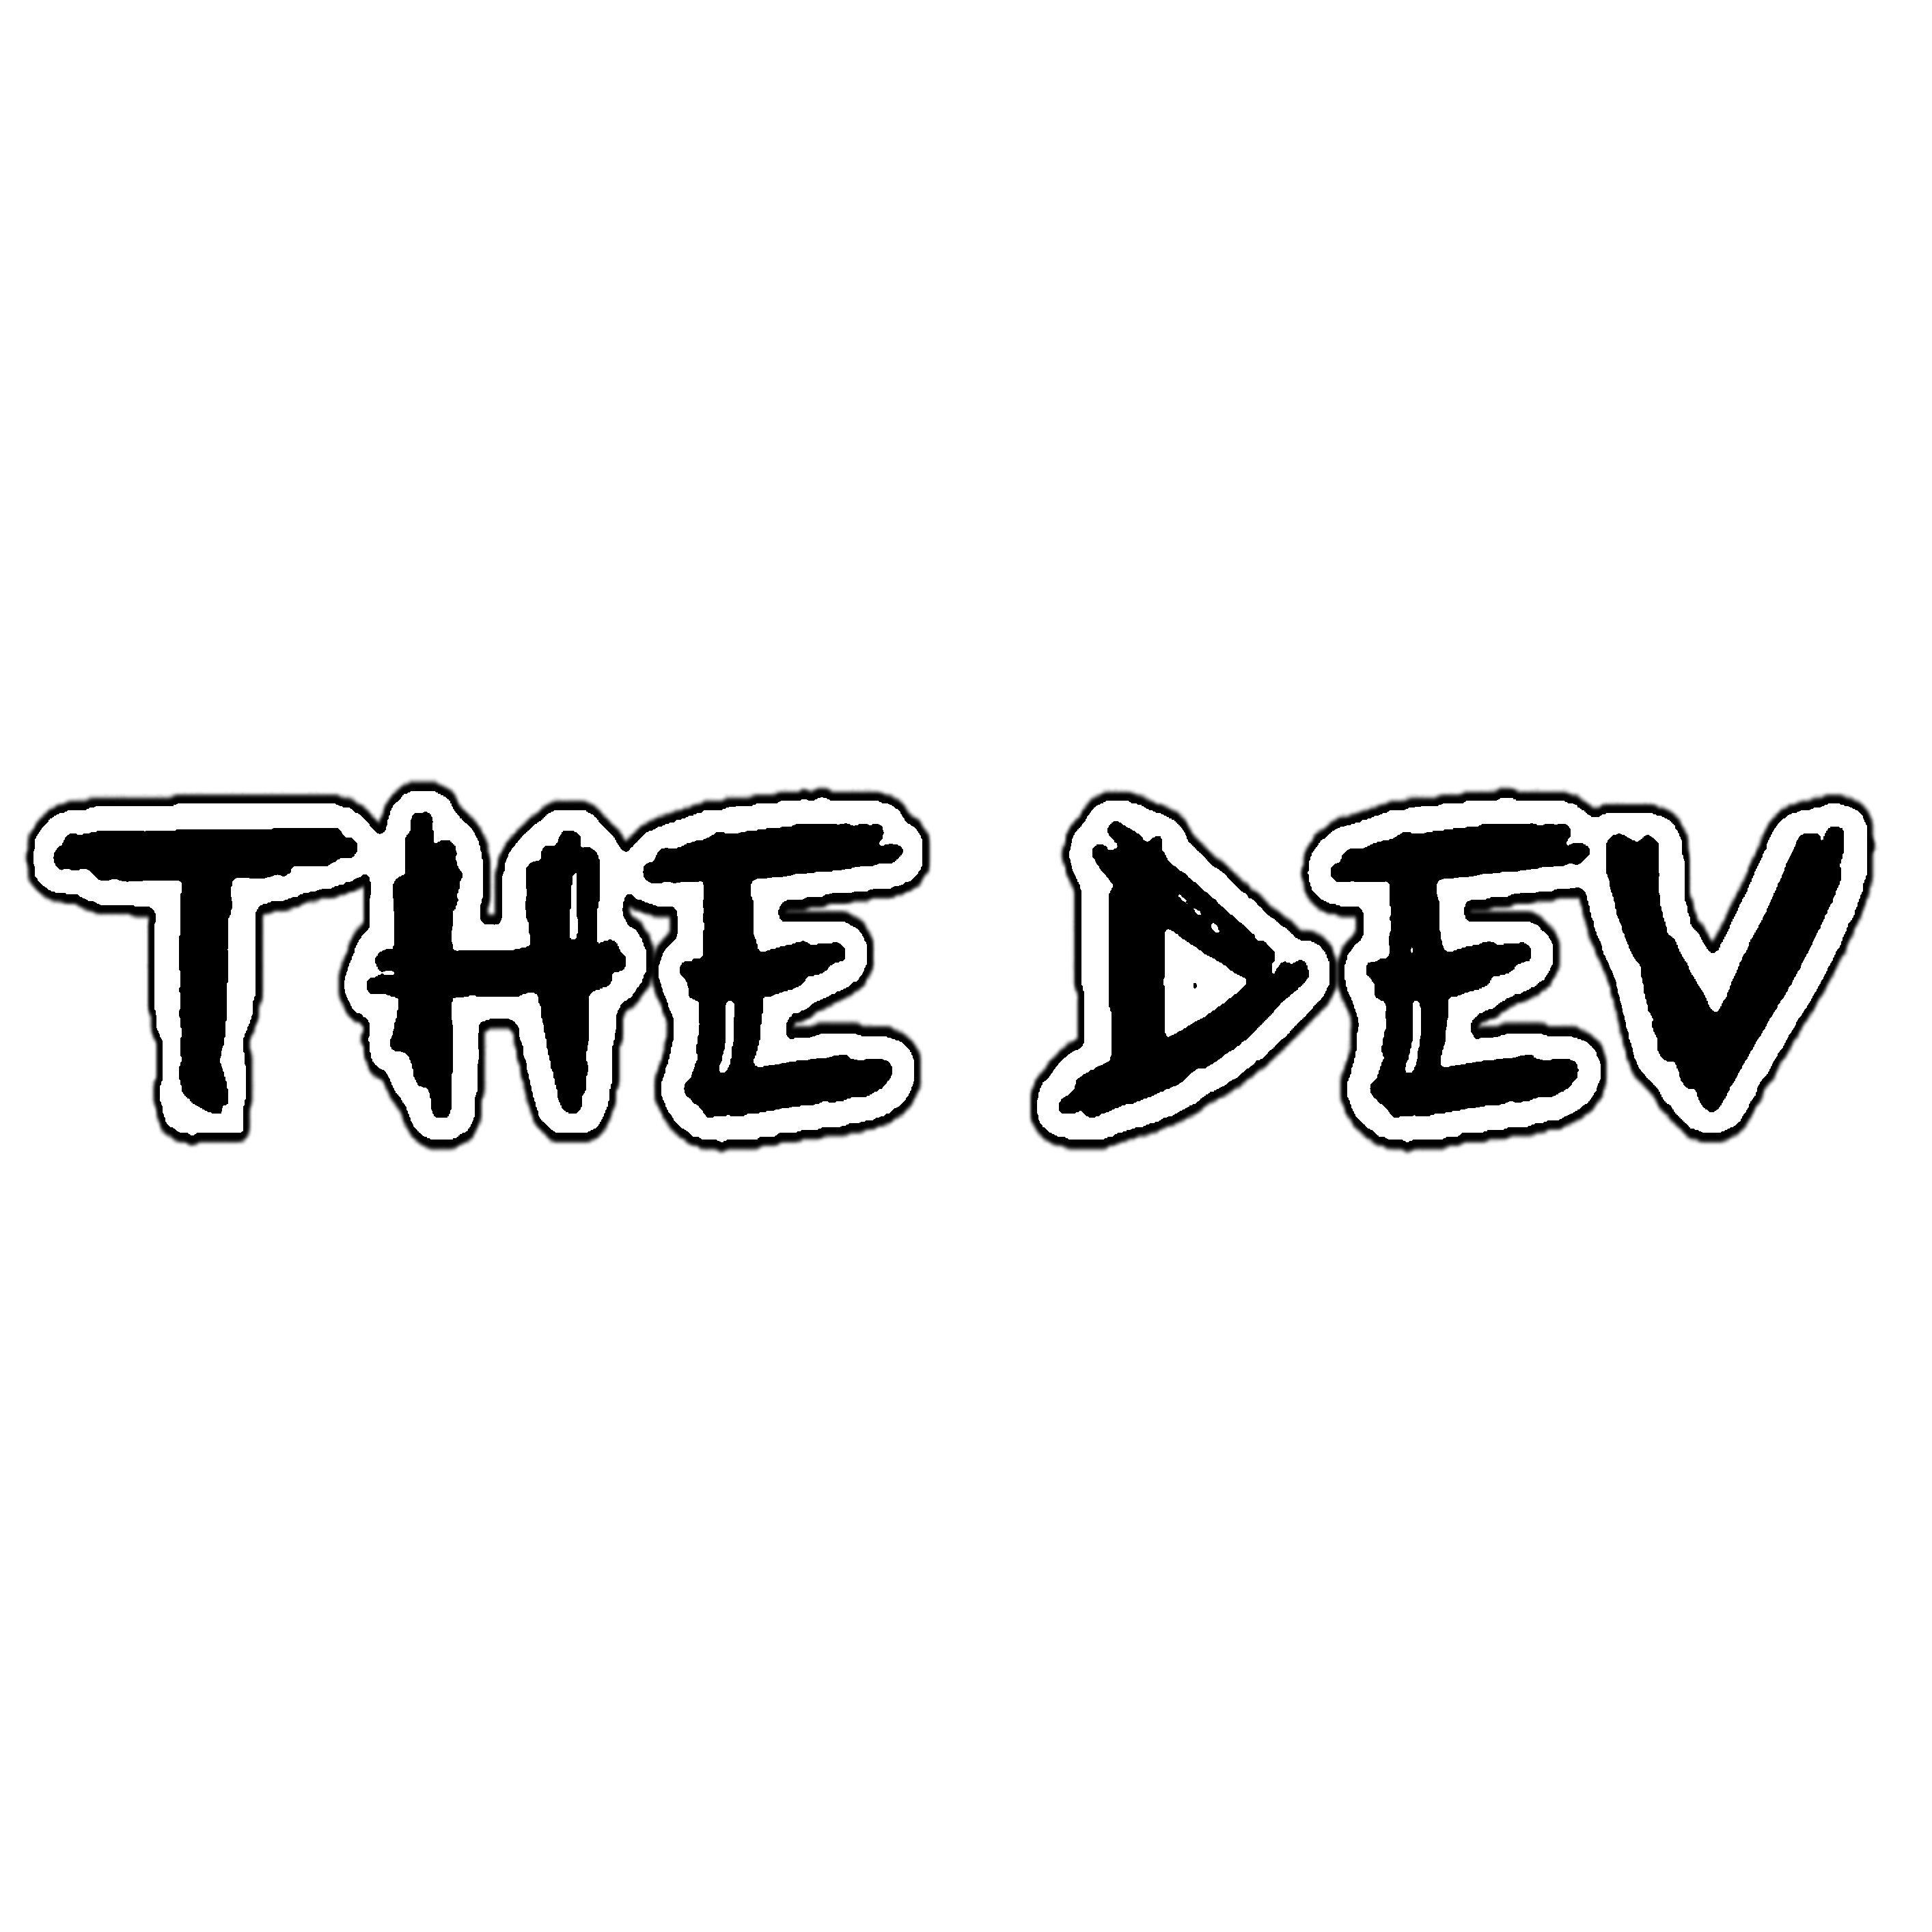 THE DEV